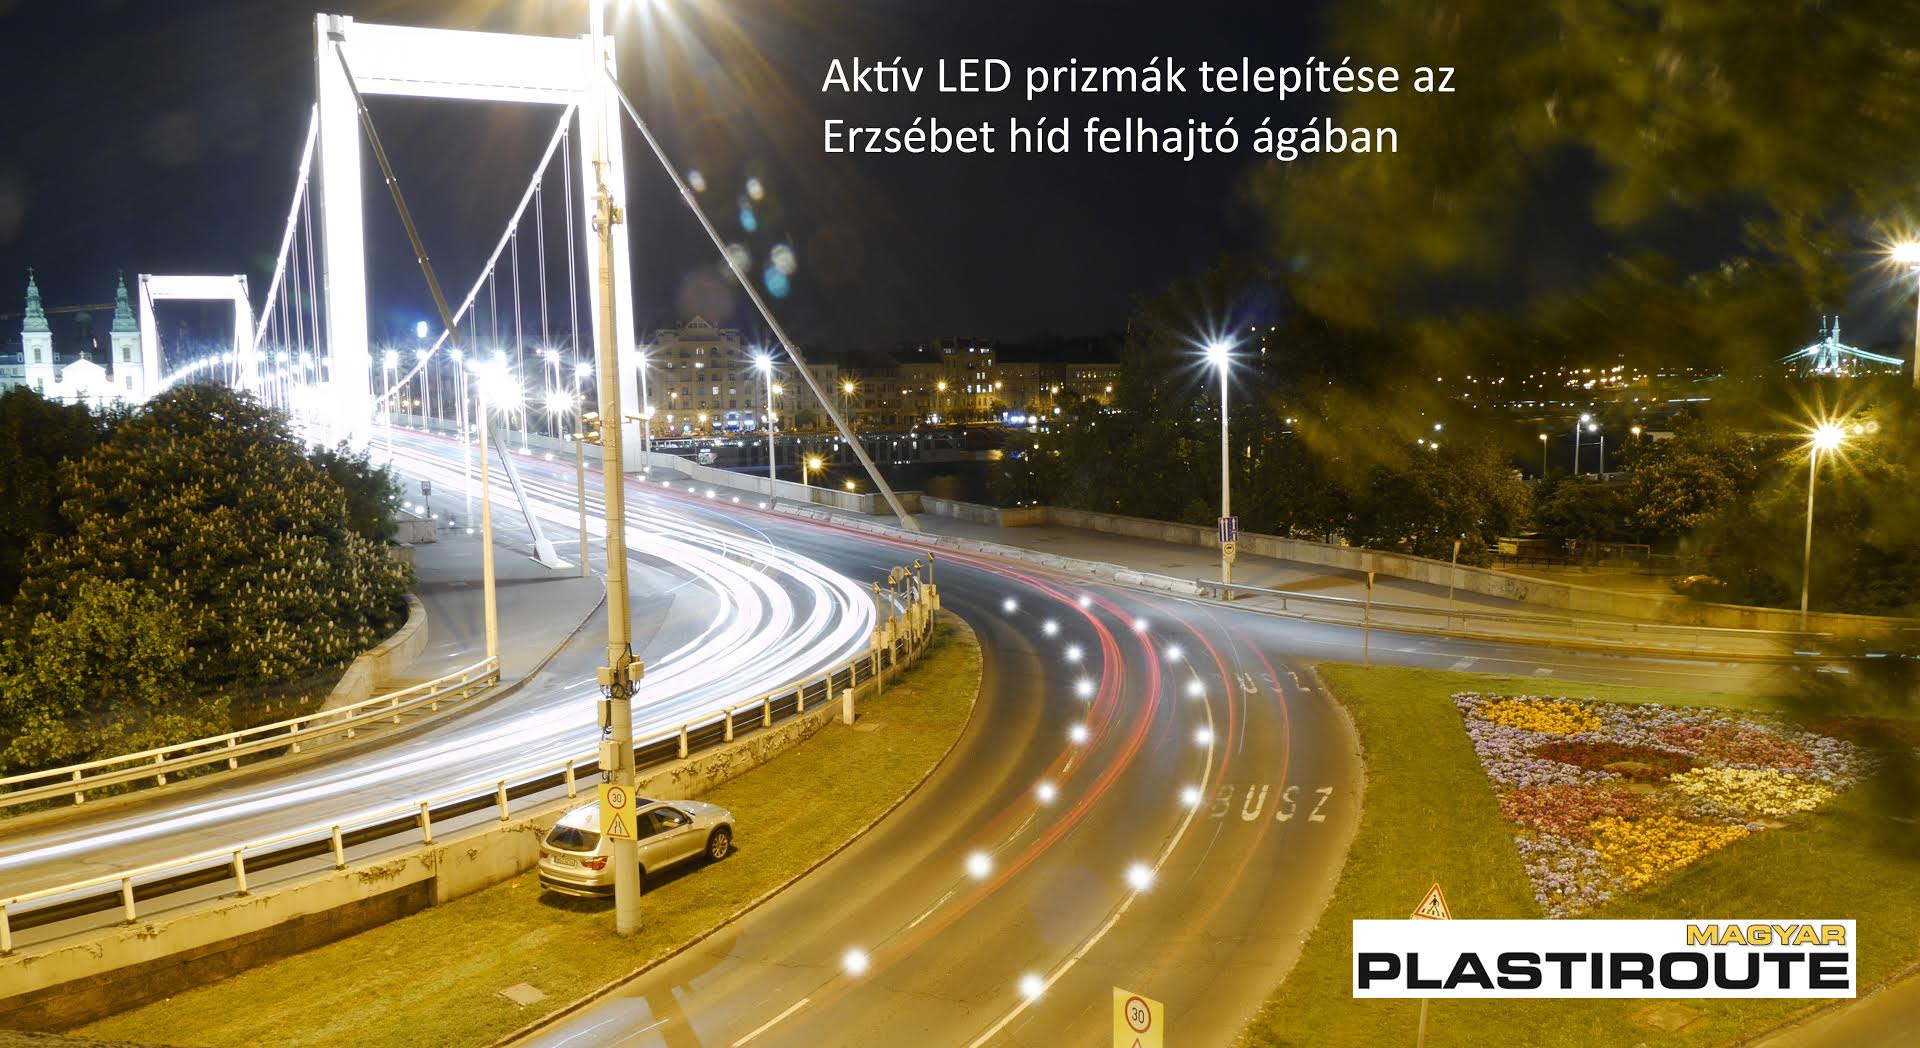 LED-es aktív útburkolati prizmákkal a biztonságos közlekedésért